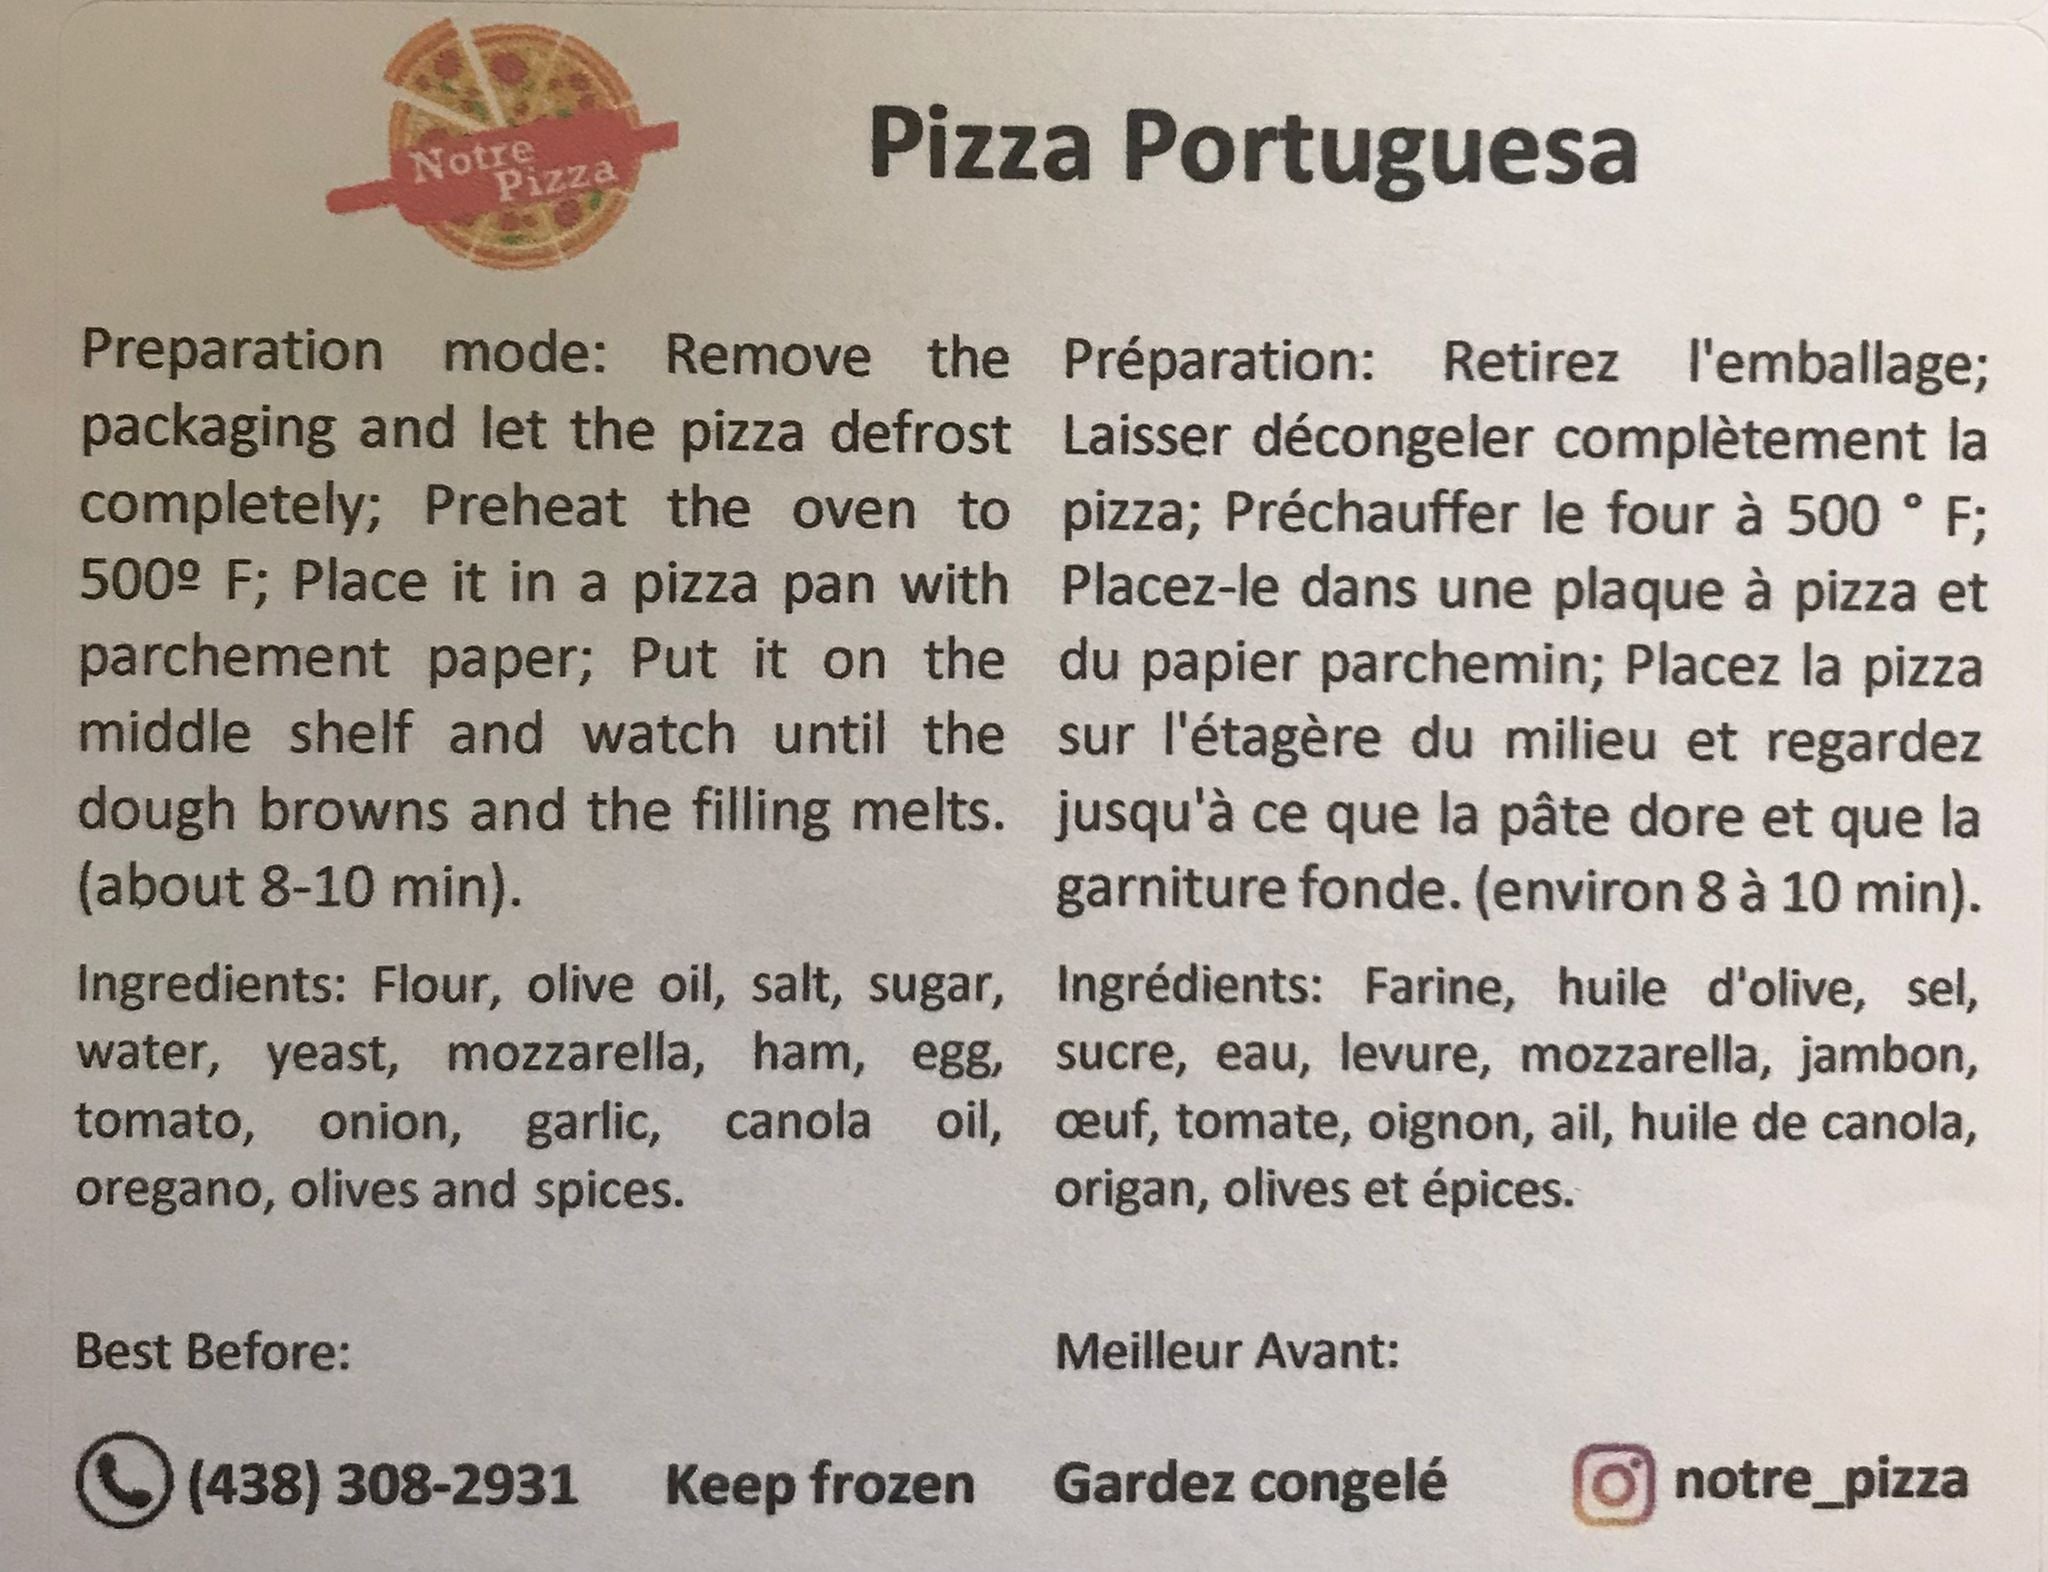 NOTRE PIZZA - Home-made Pizza - Portuguesa